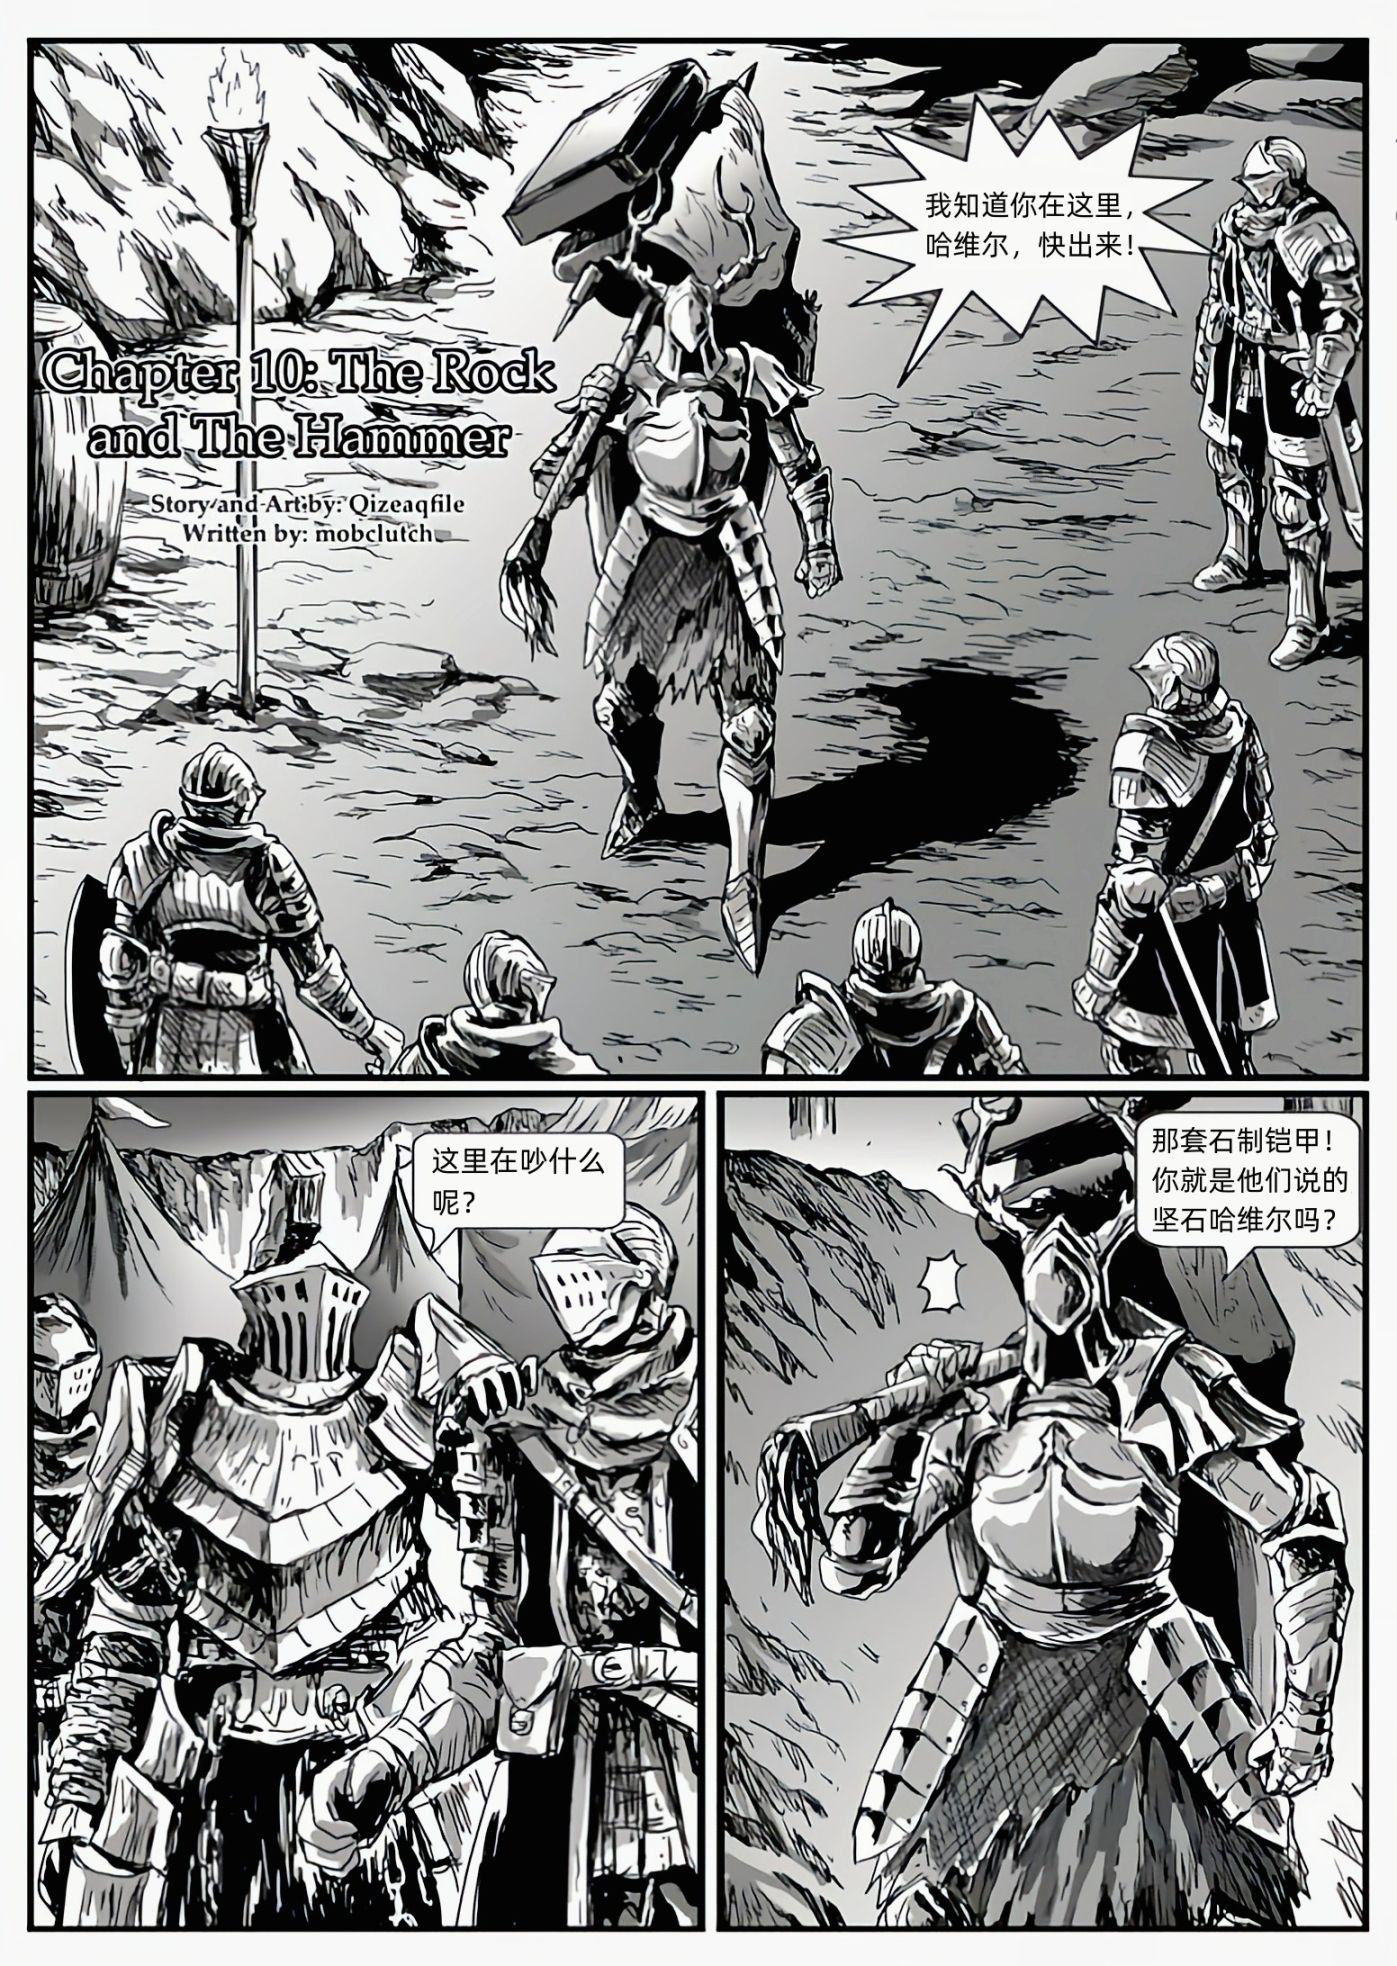 【漫畫】黑暗靈魂：獵龍戰爭（chap9銀騎士雷多-chap10堅石與大錘-第14張